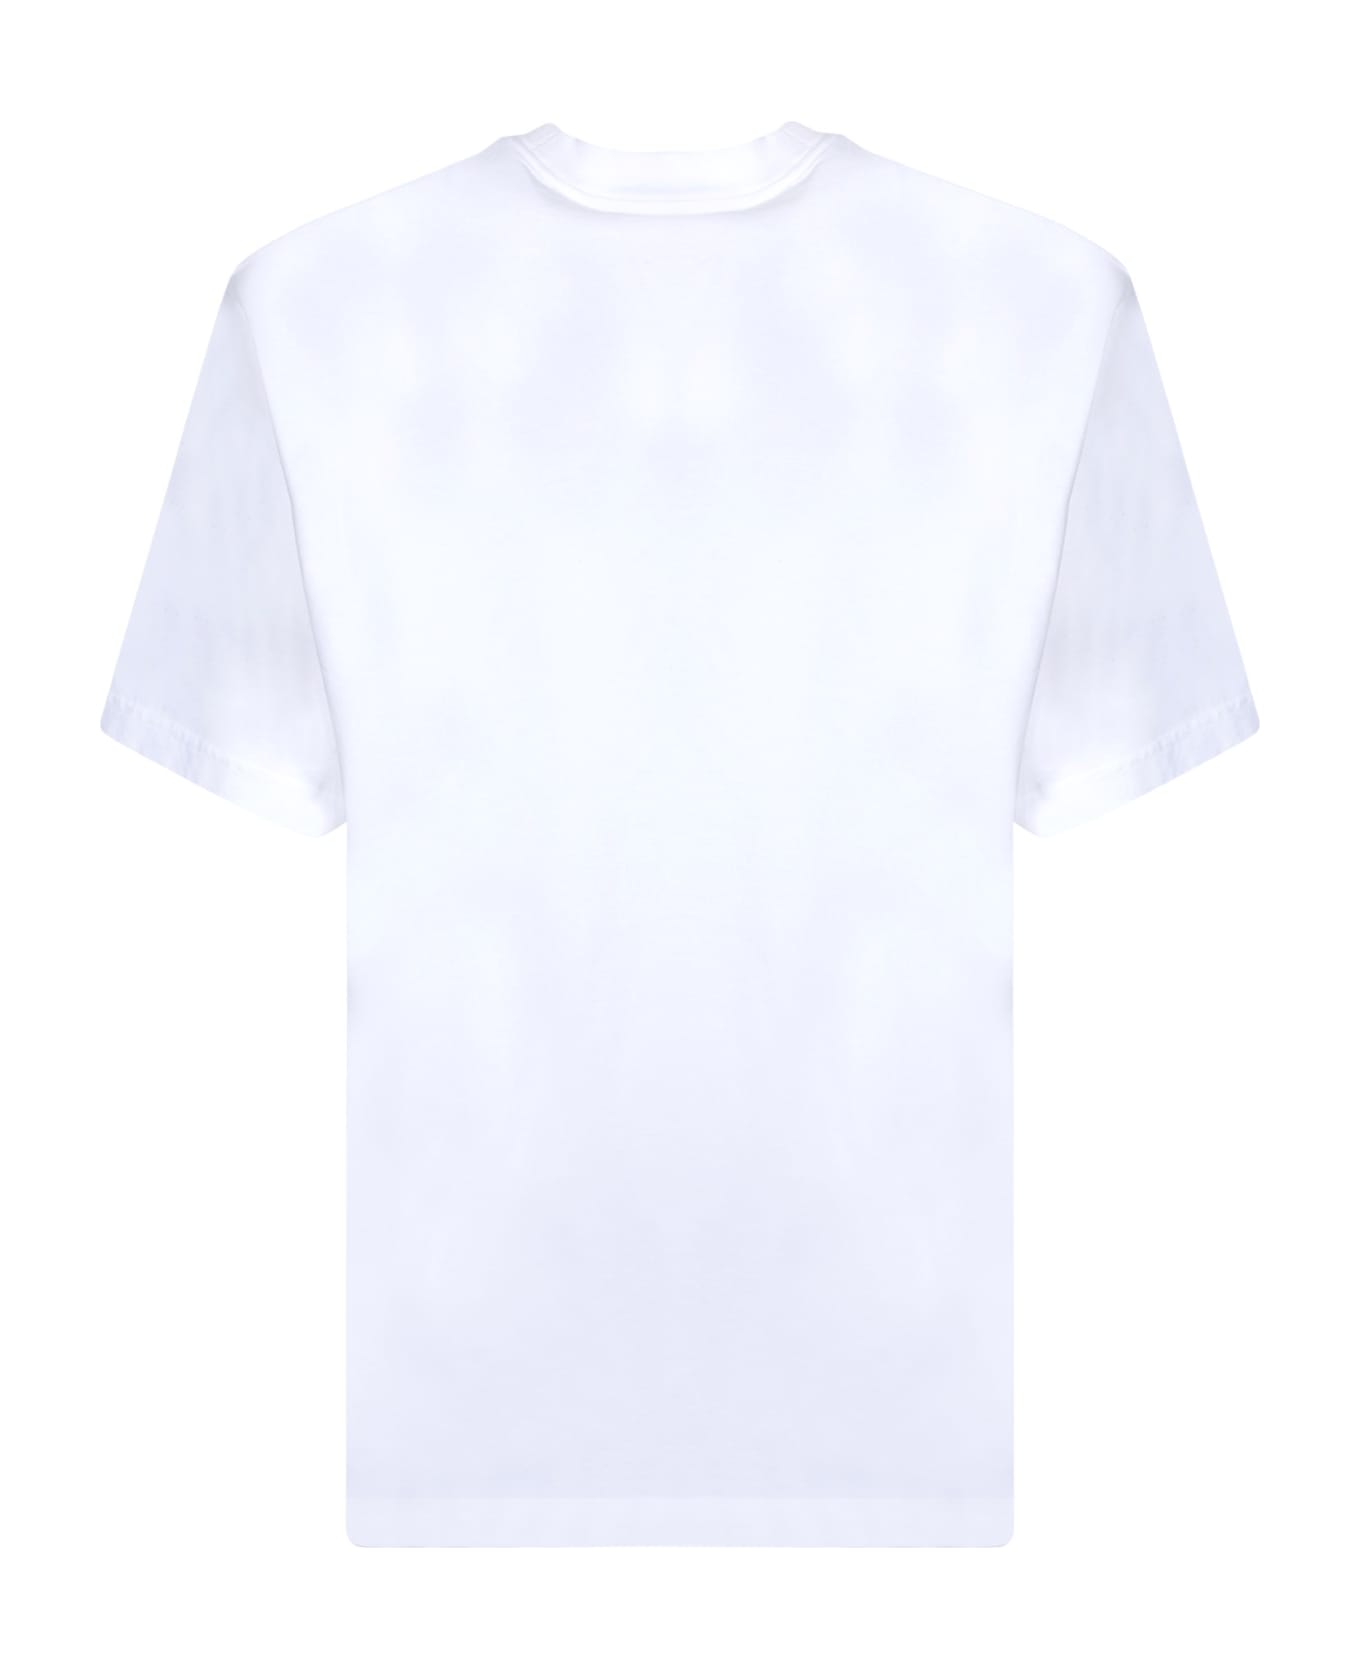 Axel Arigato Siganture White T-shirt - White